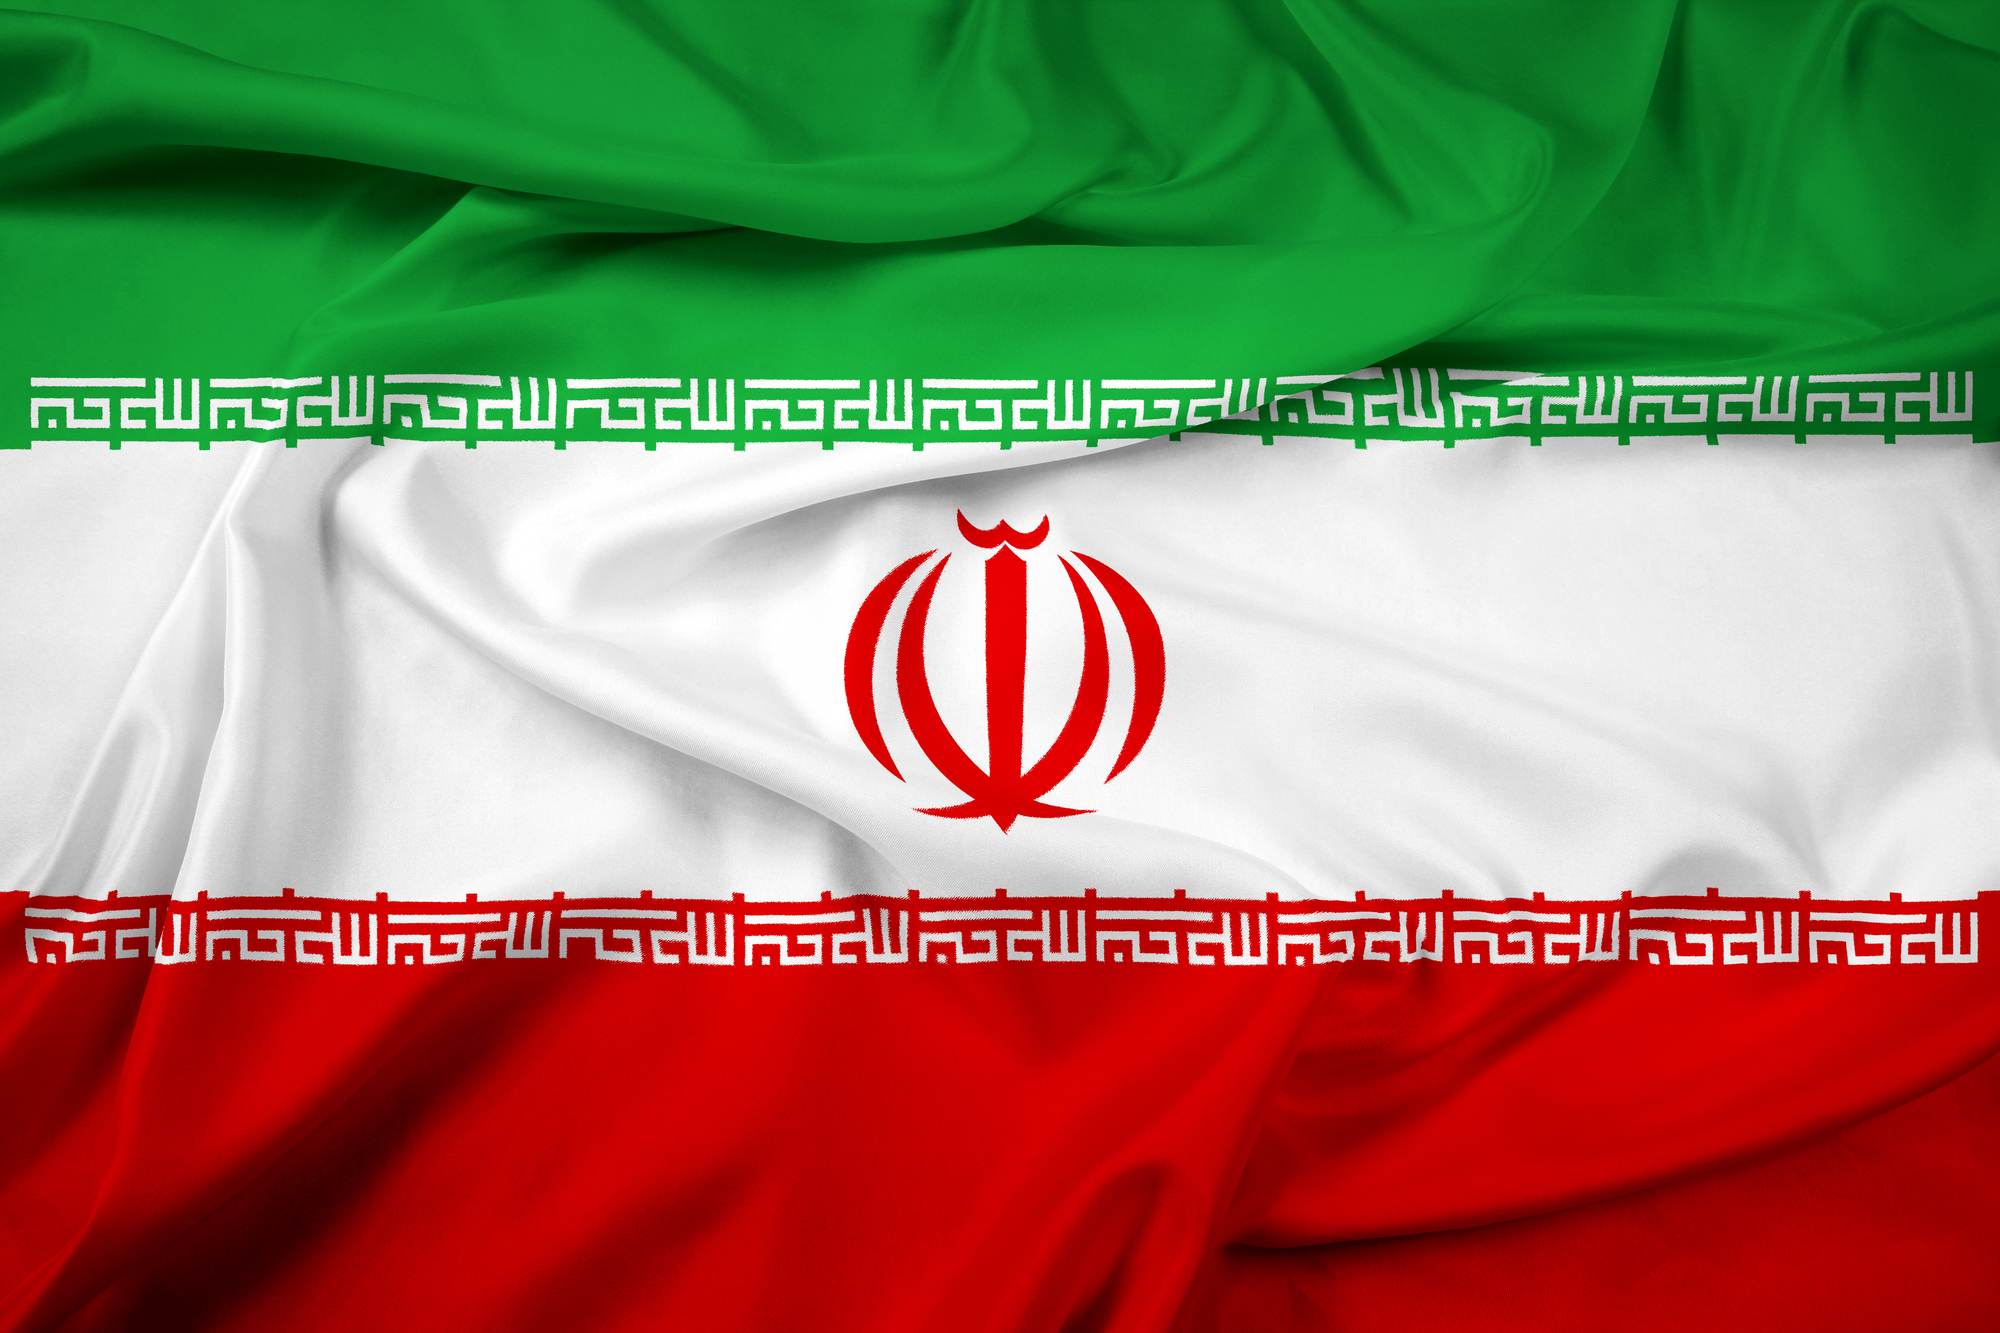 Irán állítása szerint két napon belül képes 20 százalékosra dúsított uránt előállítani